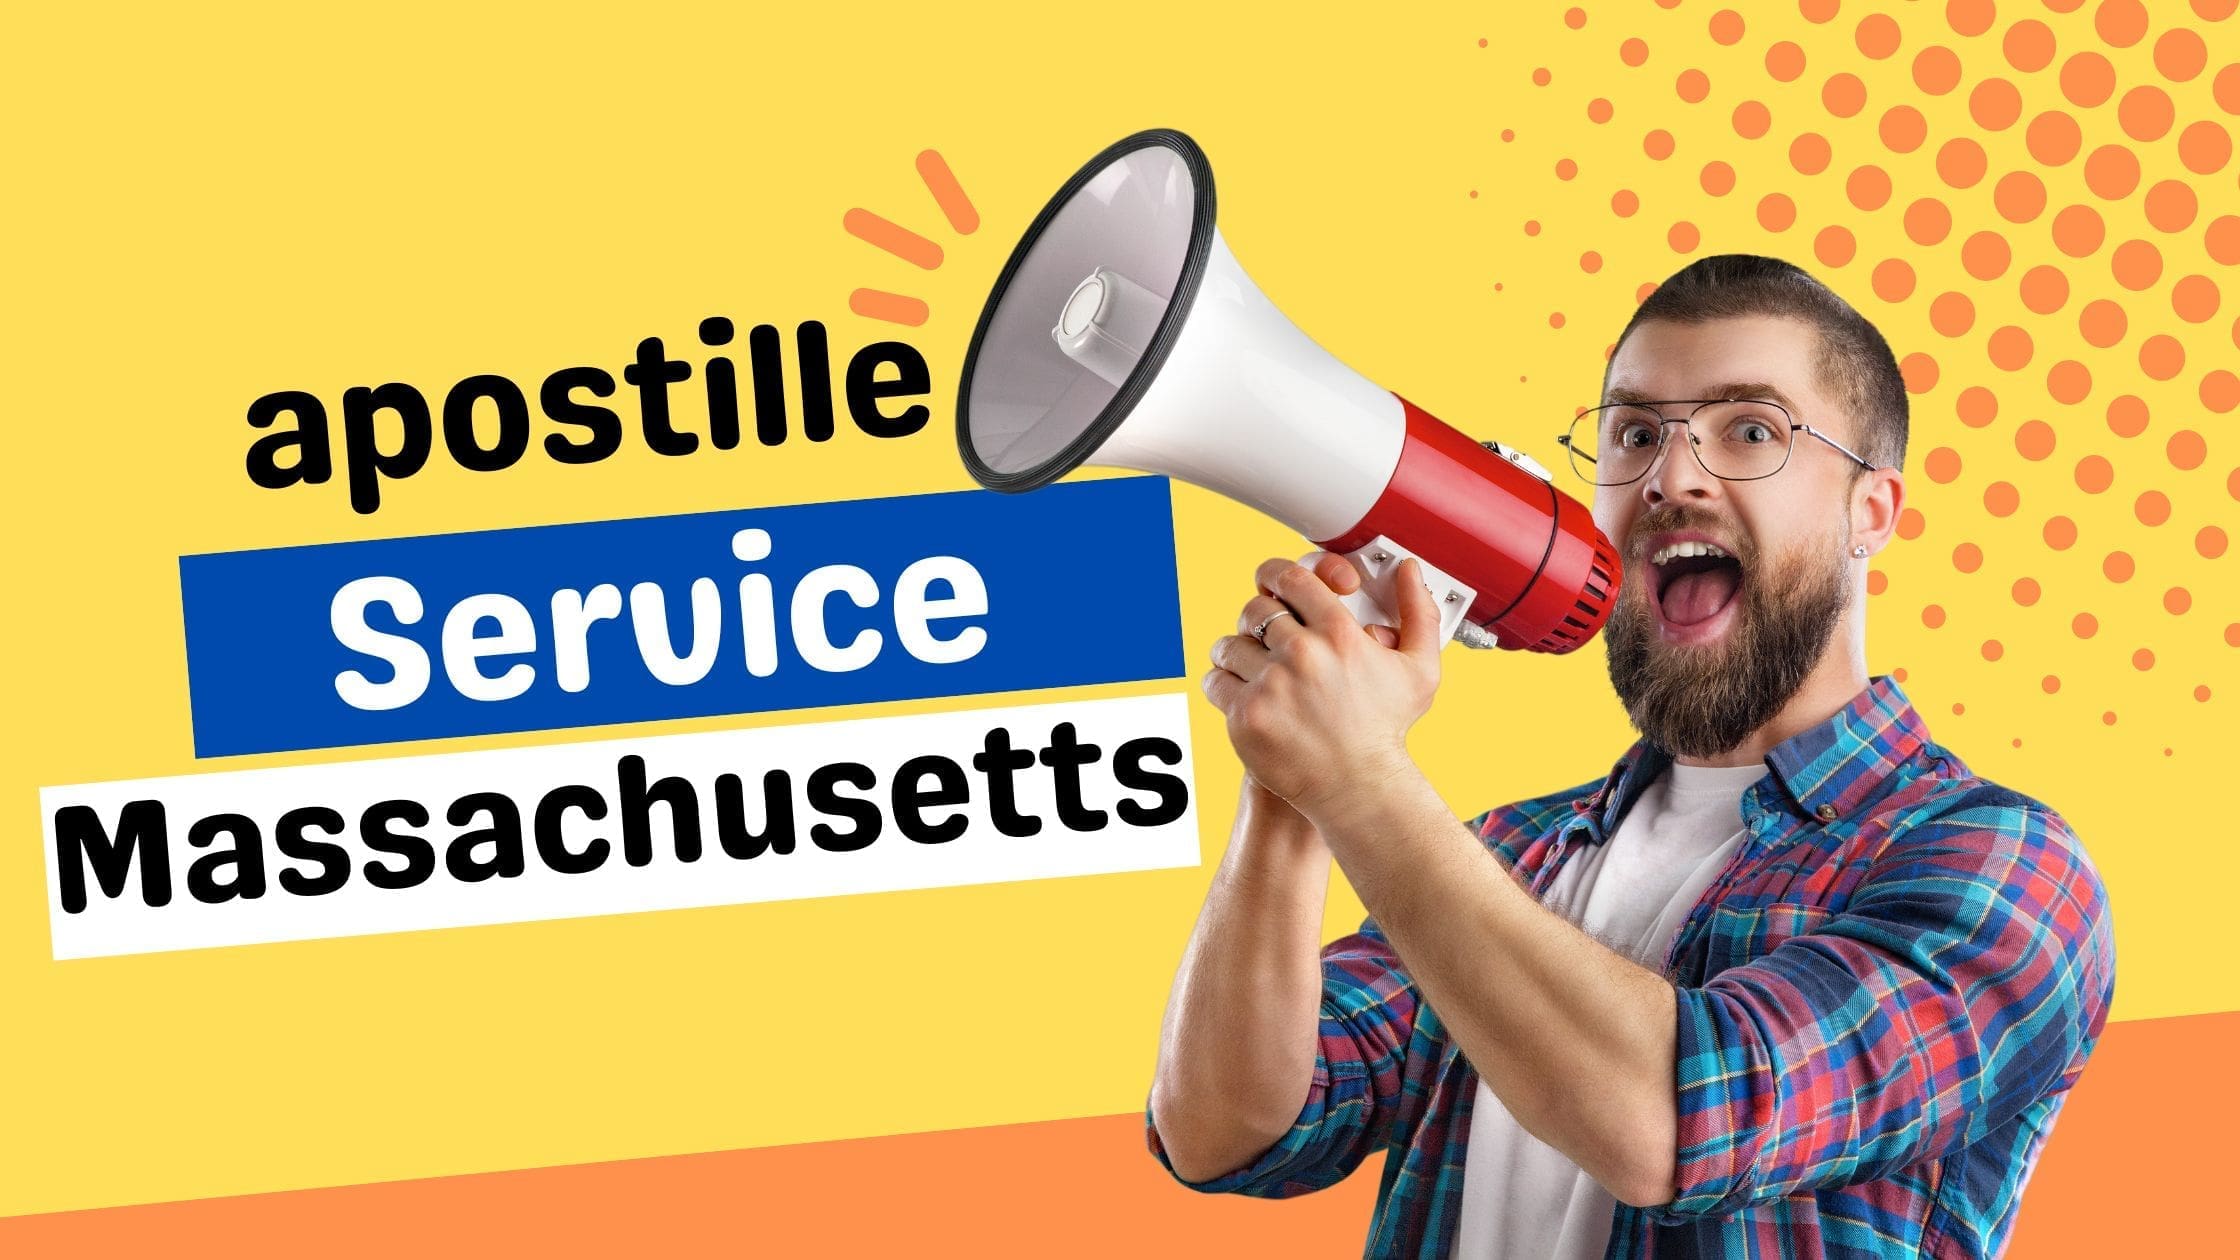 Massachusetts Apostille Service